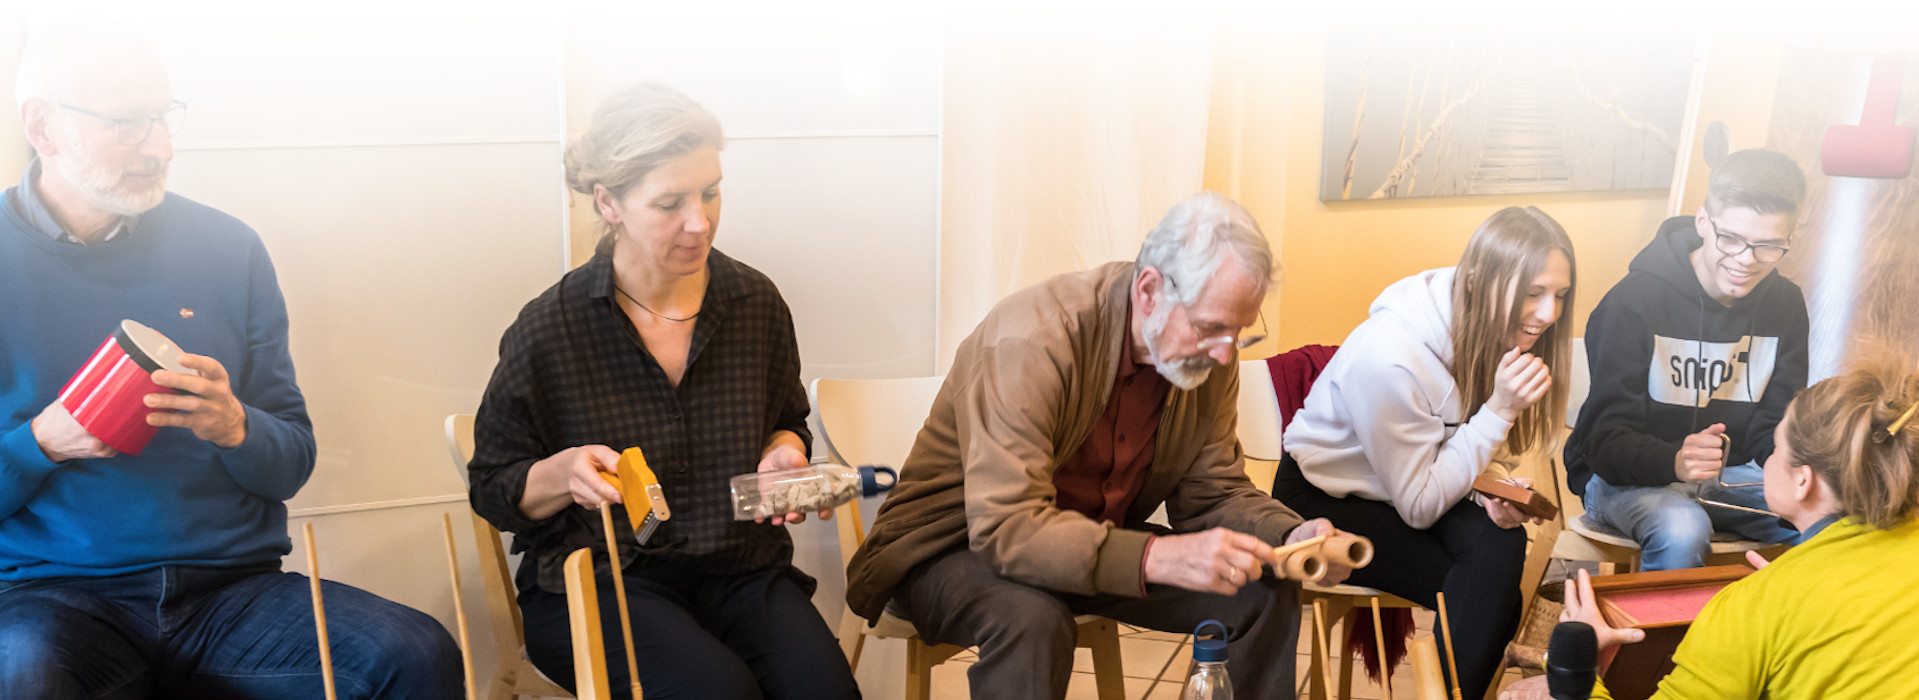 Mehrere Menschen sitzen auf Stühlen und halten Instrumente in der Hand. Foto: Ursula Wendeberg